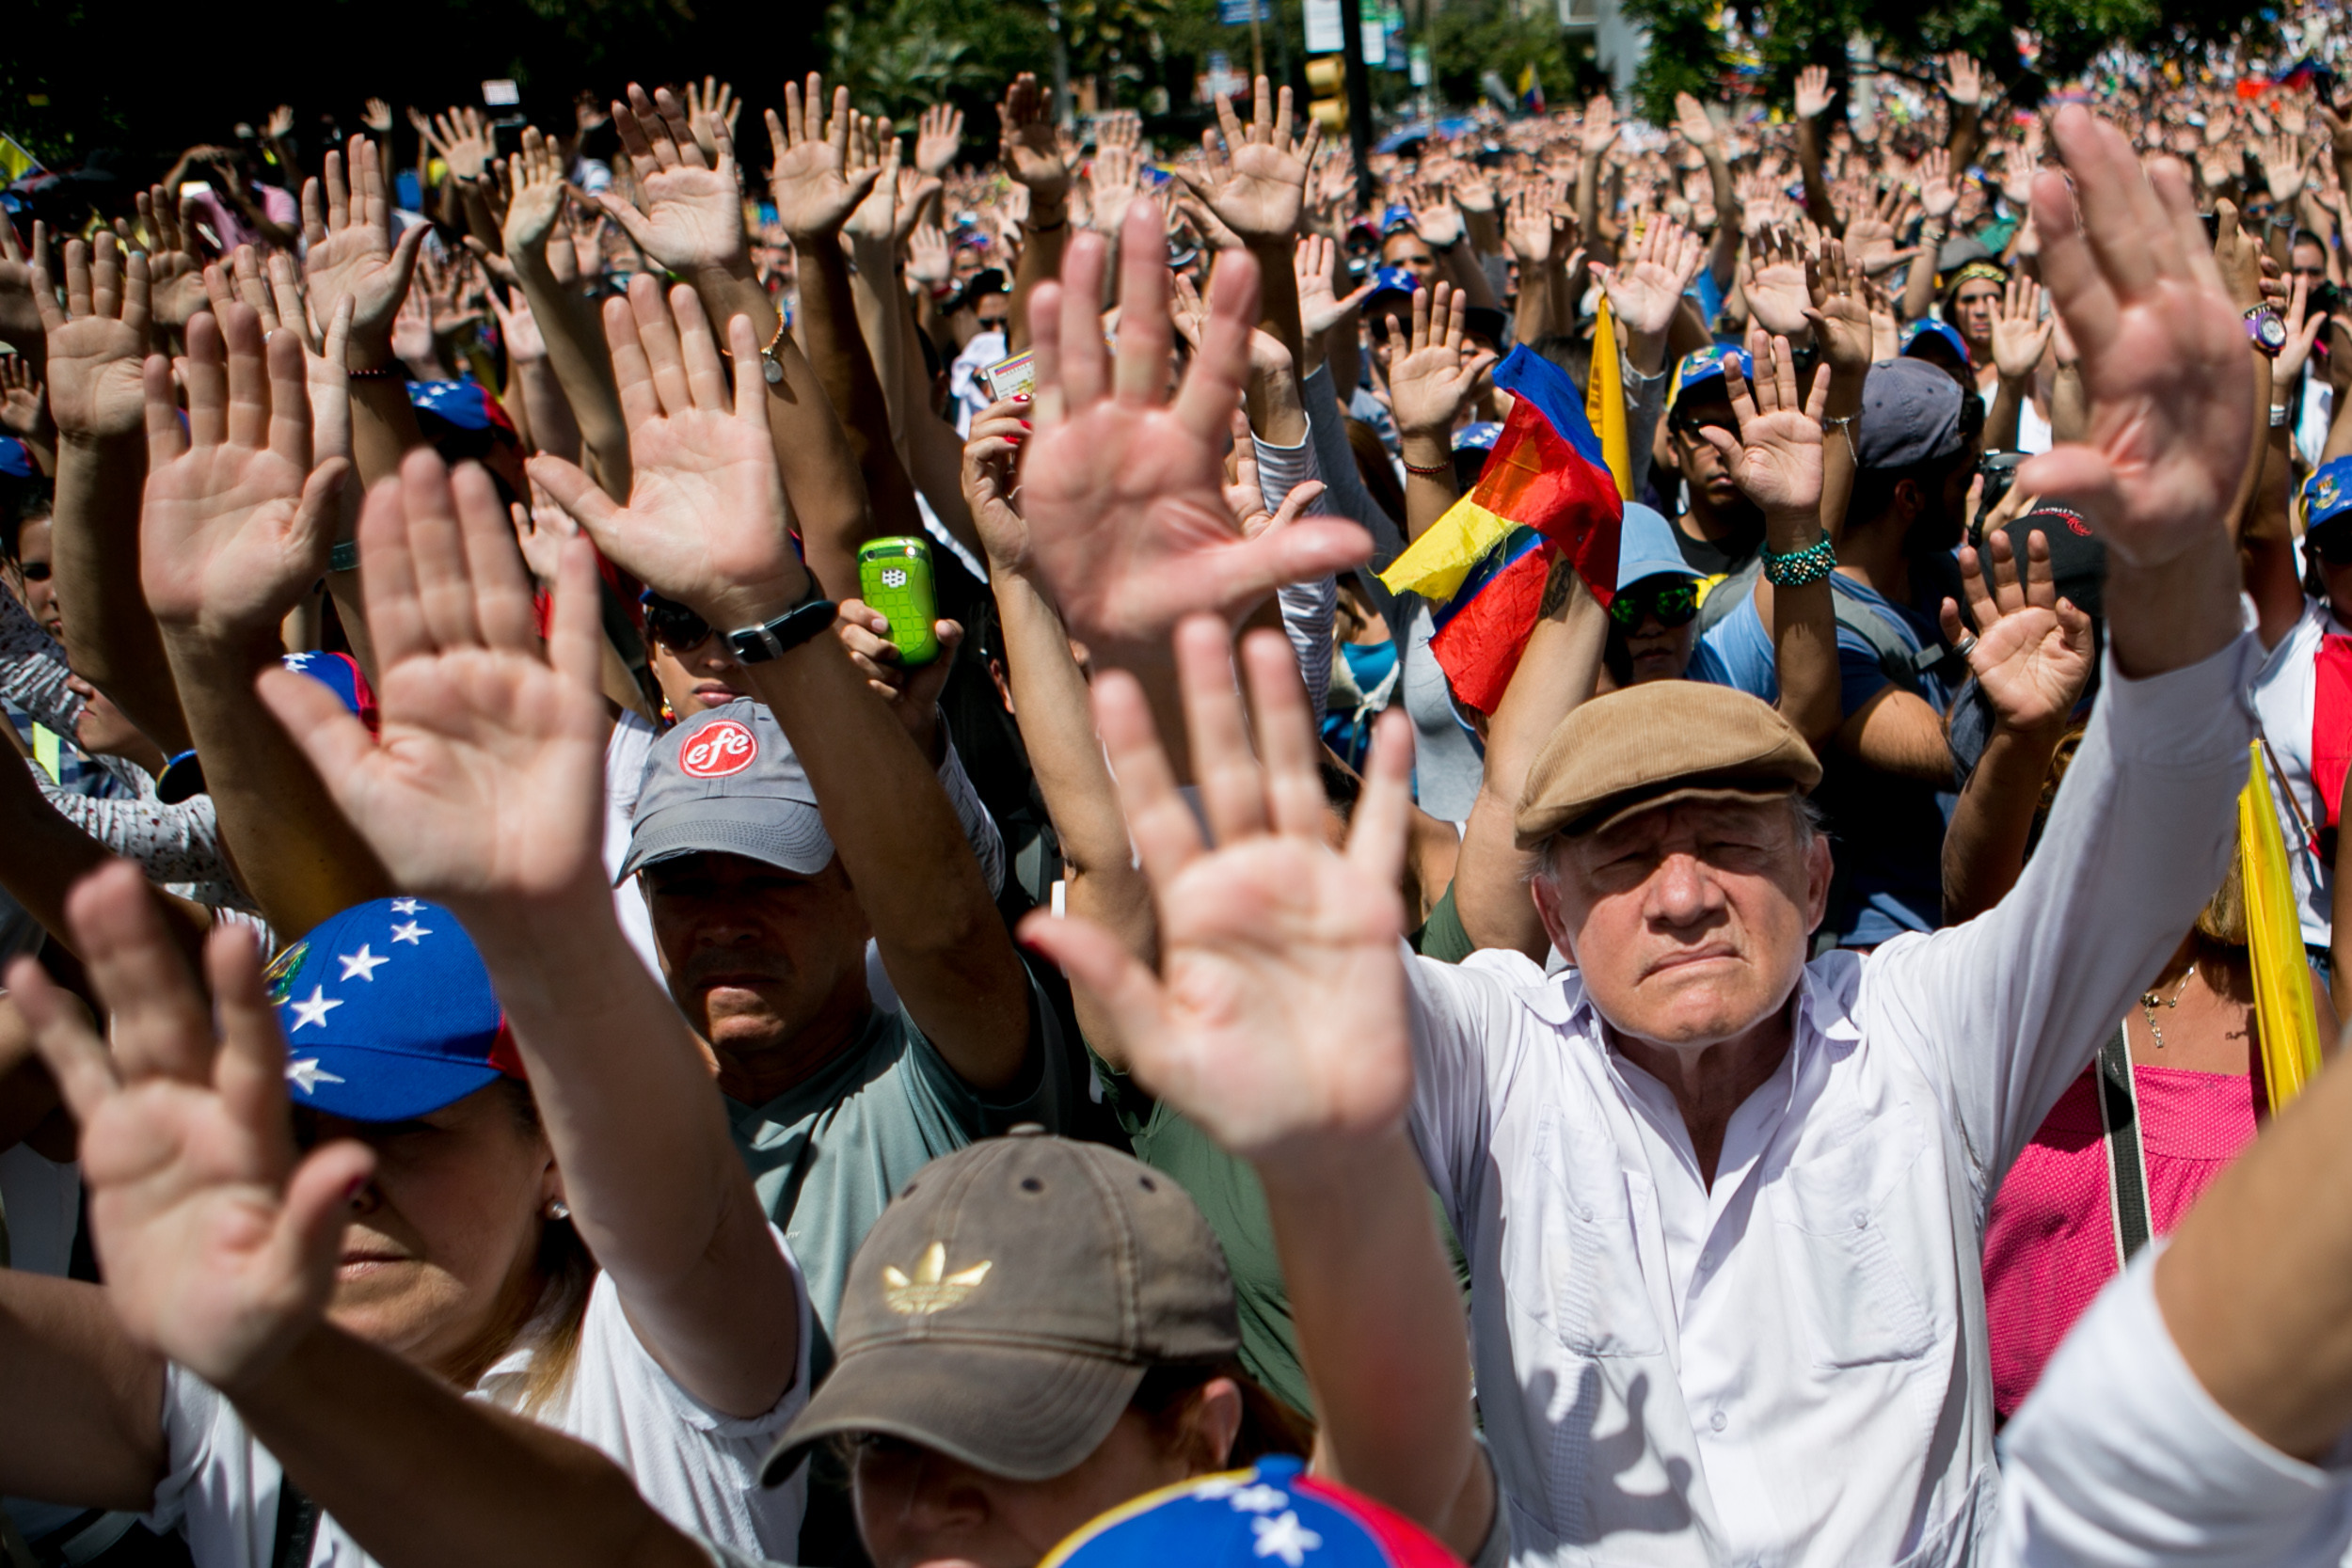 Manifestantes levantan las manos para mostrar que están desarmados y que actúan de manera pacífica durante una protesta efectuada en Caracas, Venezuela, el domingo 16 de febrero de 2013 en la que piden el desarme de grupos armados. (Foto AP/Alejandro Cegarra)